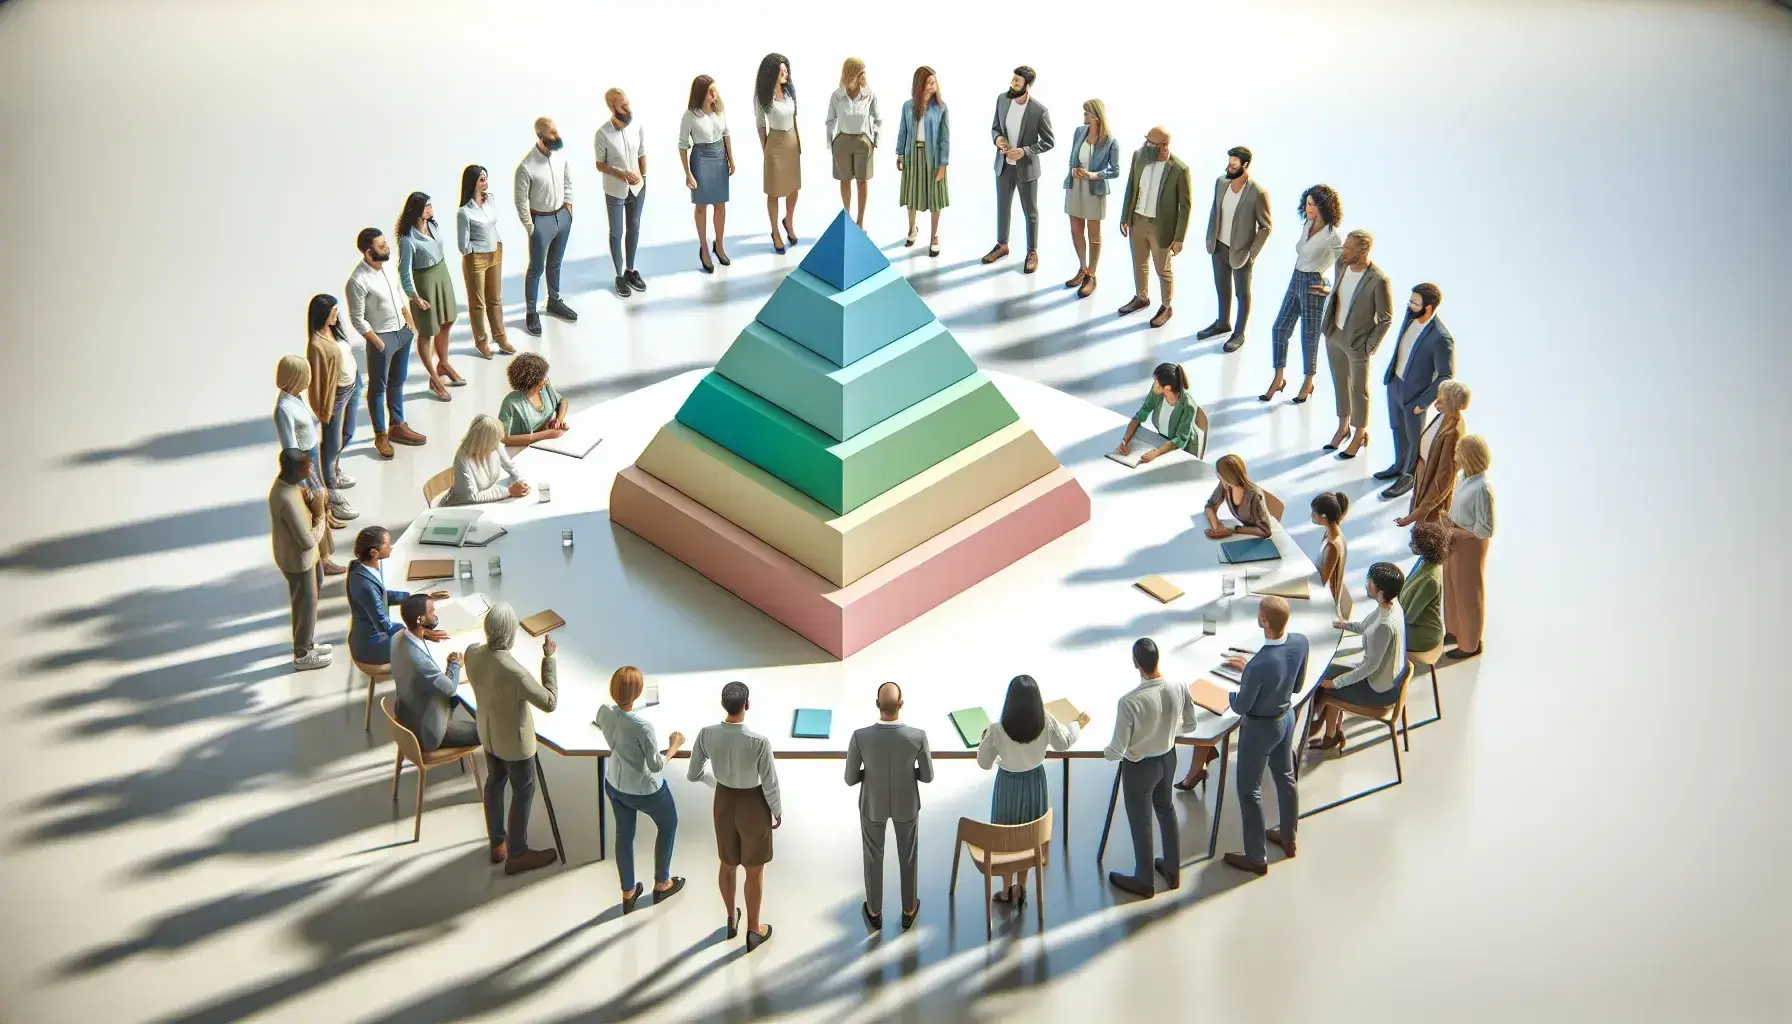 Grupo diverso de personas en reunión alrededor de una mesa con modelo a escala de pirámide de bloques de colores pastel, en una sala iluminada naturalmente.